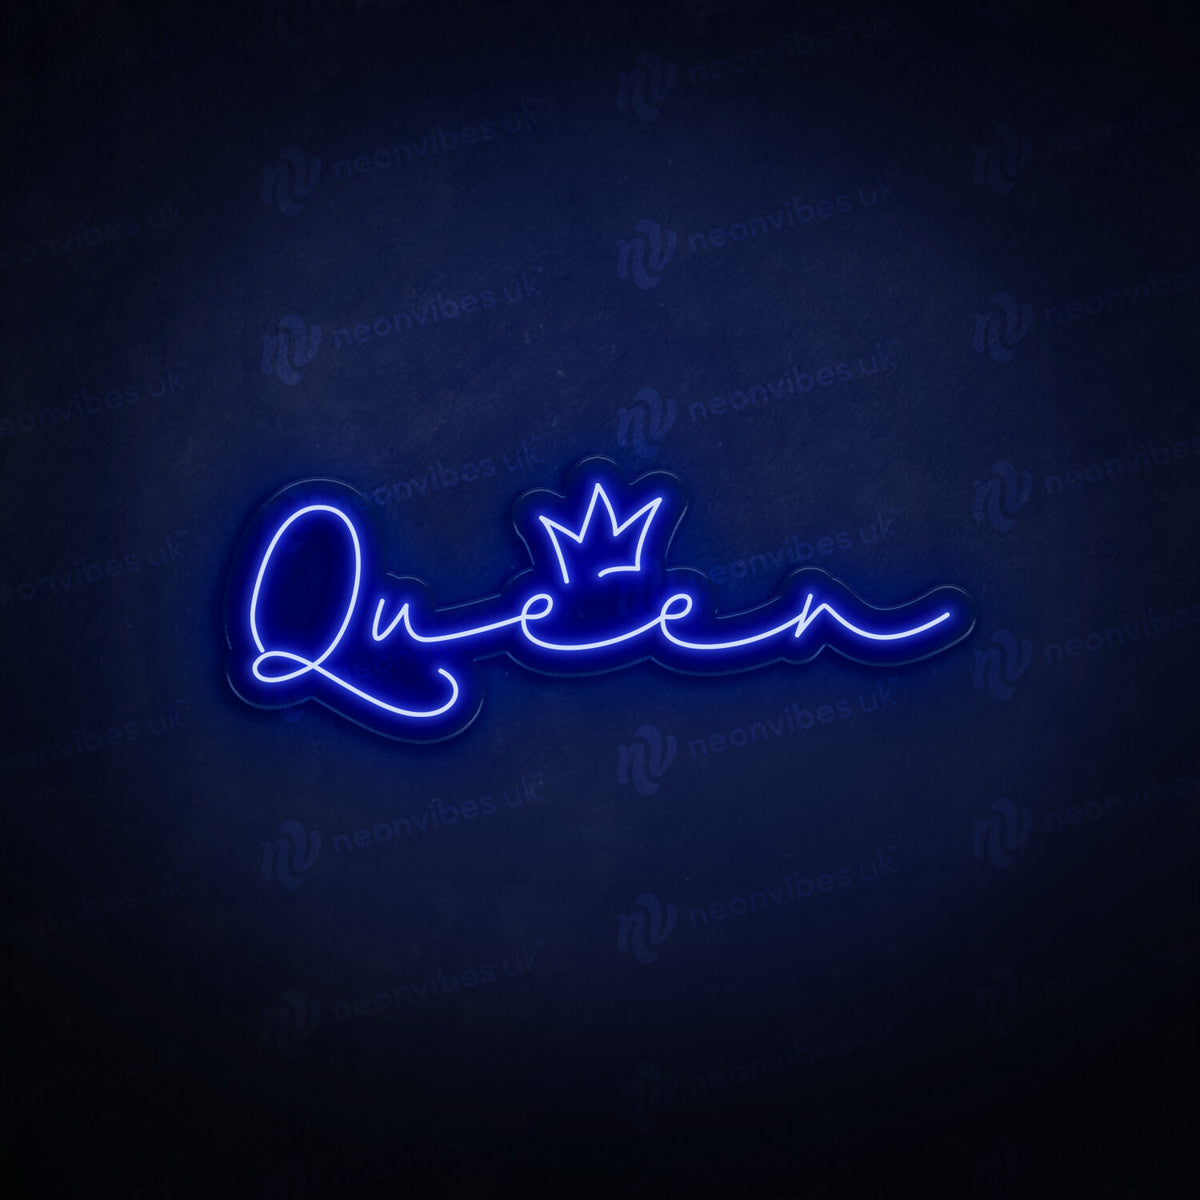 Queen &amp; Crown neon sign